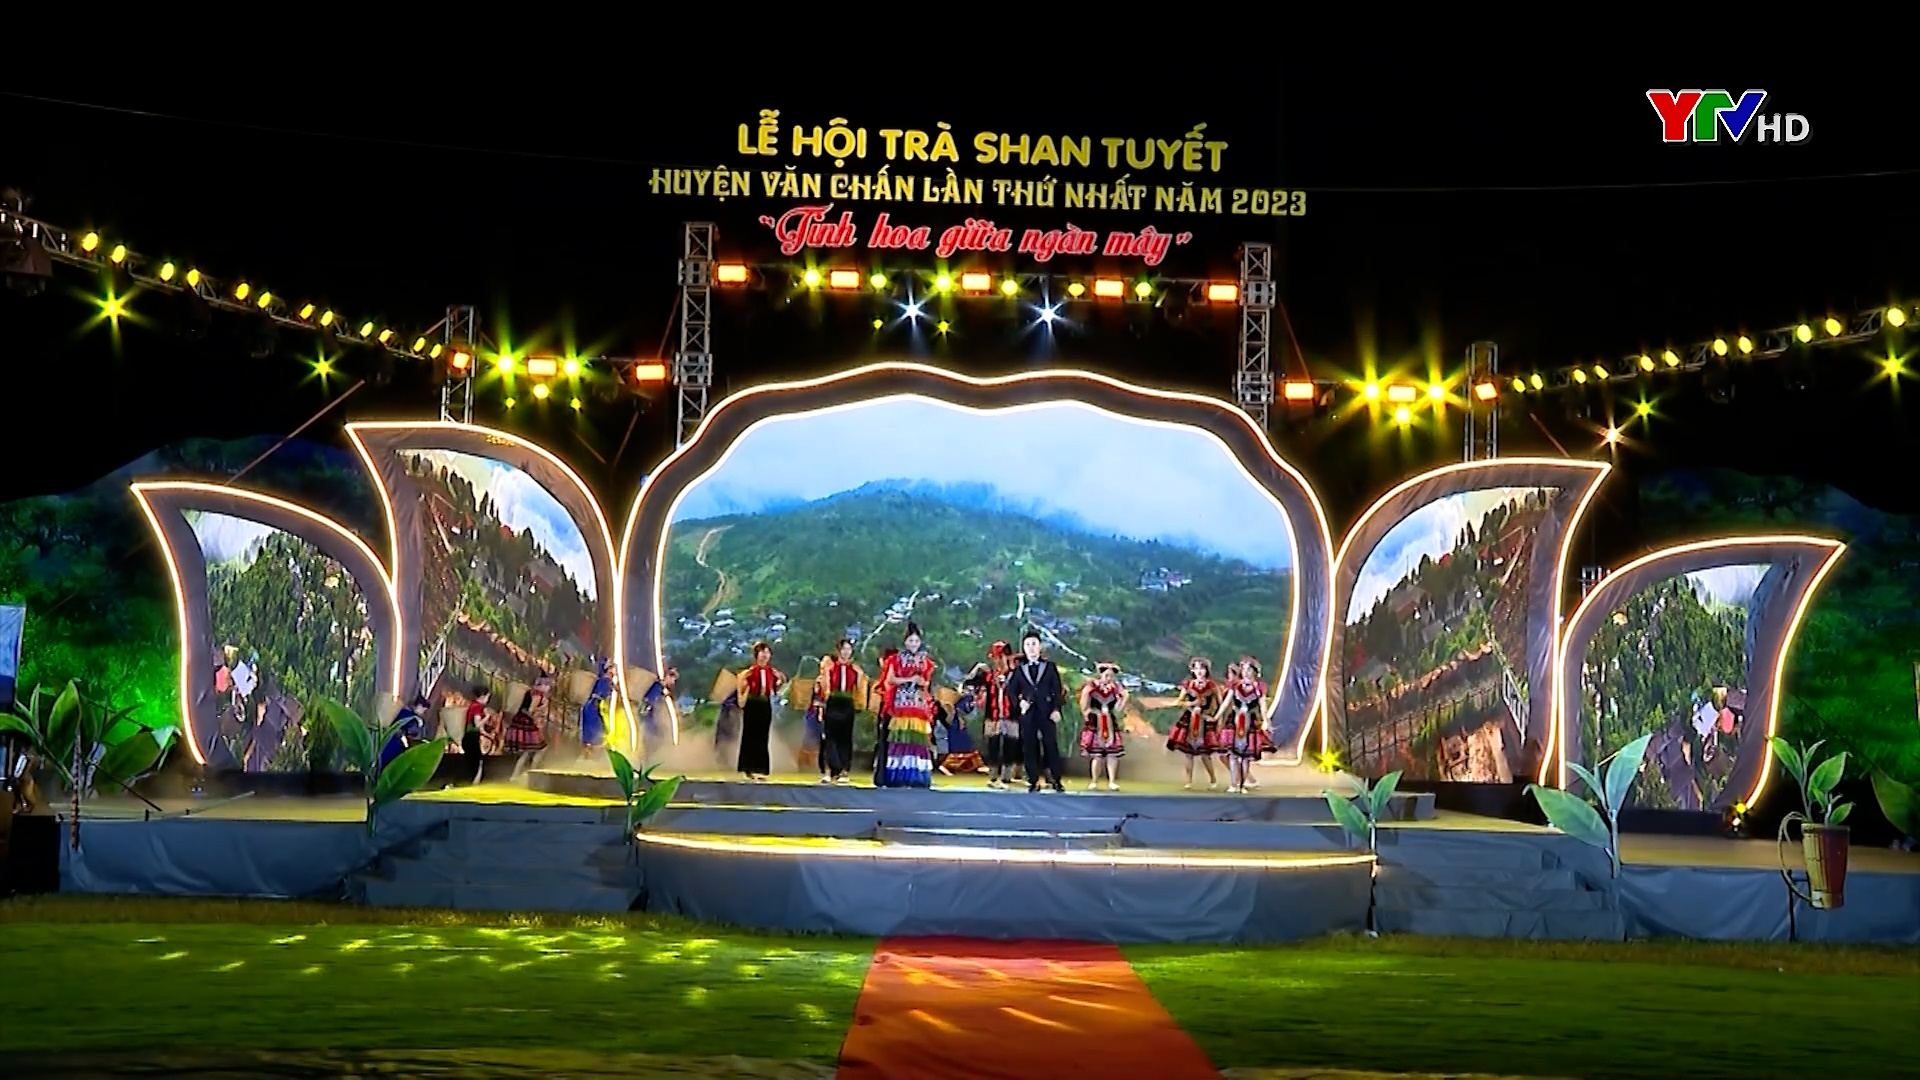 Khai mạc Lễ hội Trà Shan tuyết huyện Văn Chấn lần thứ nhất năm 2023